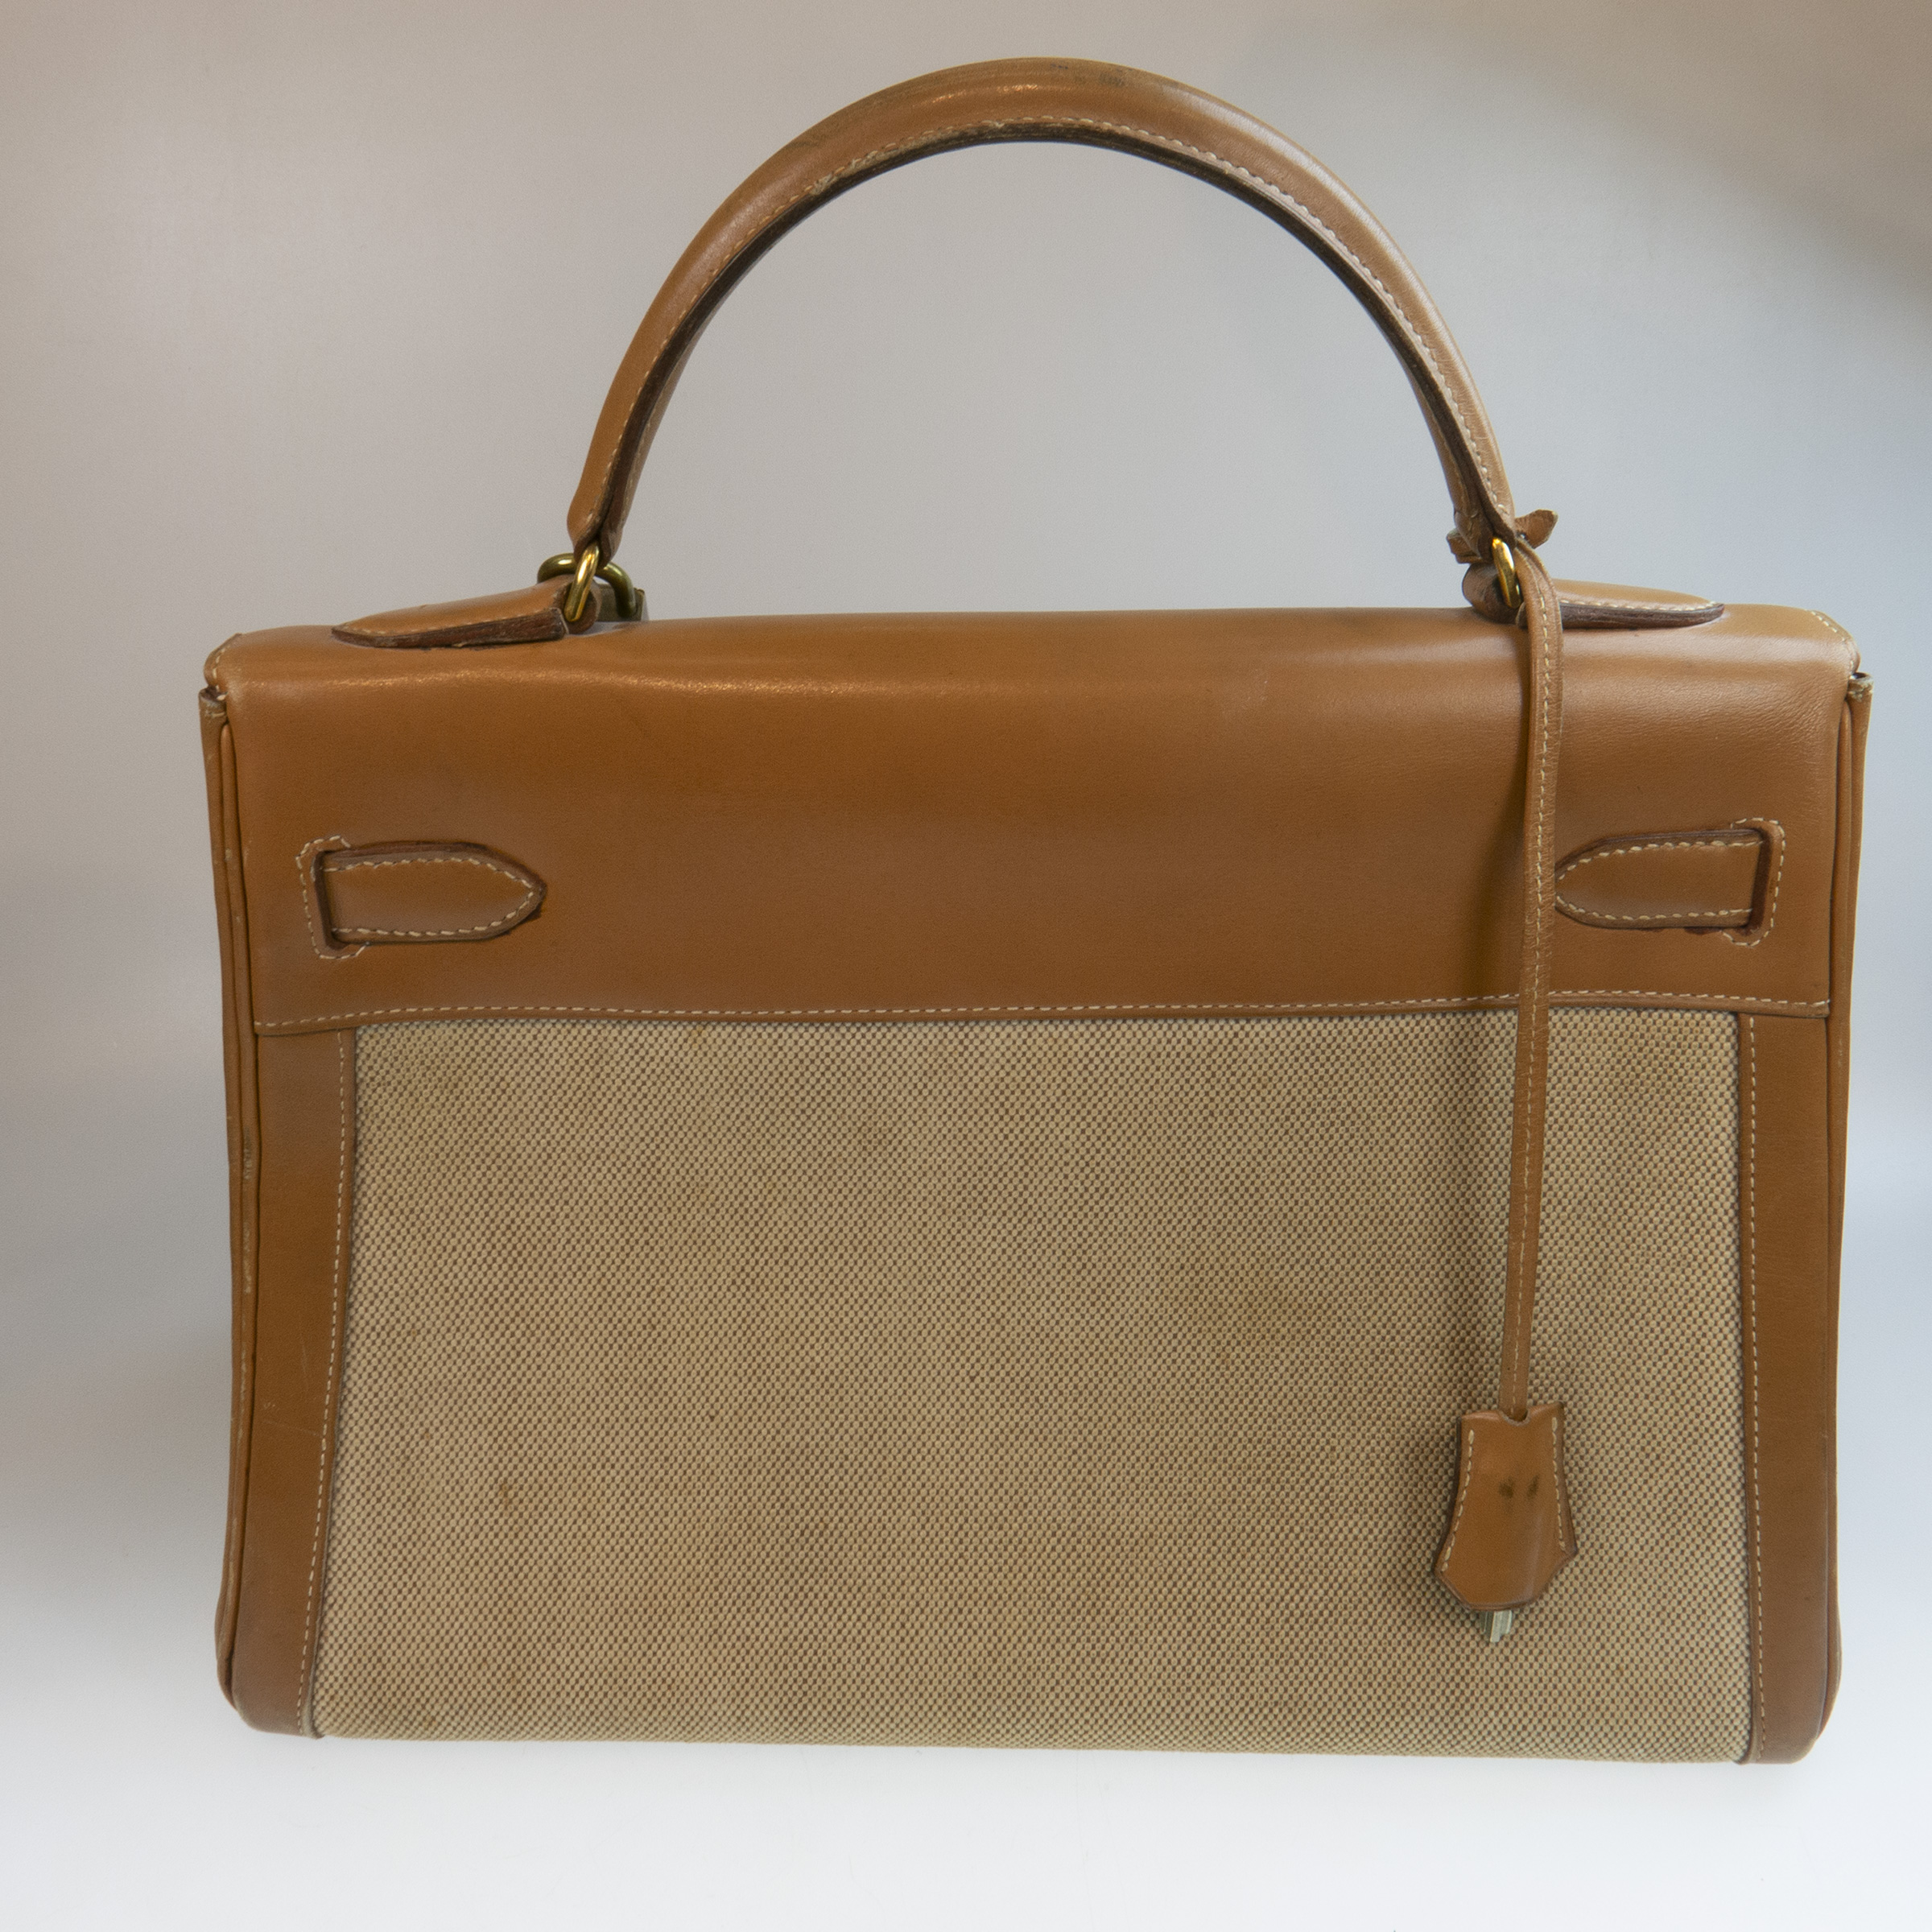 Hermes Kelly Top Handle Tan Leather Bag